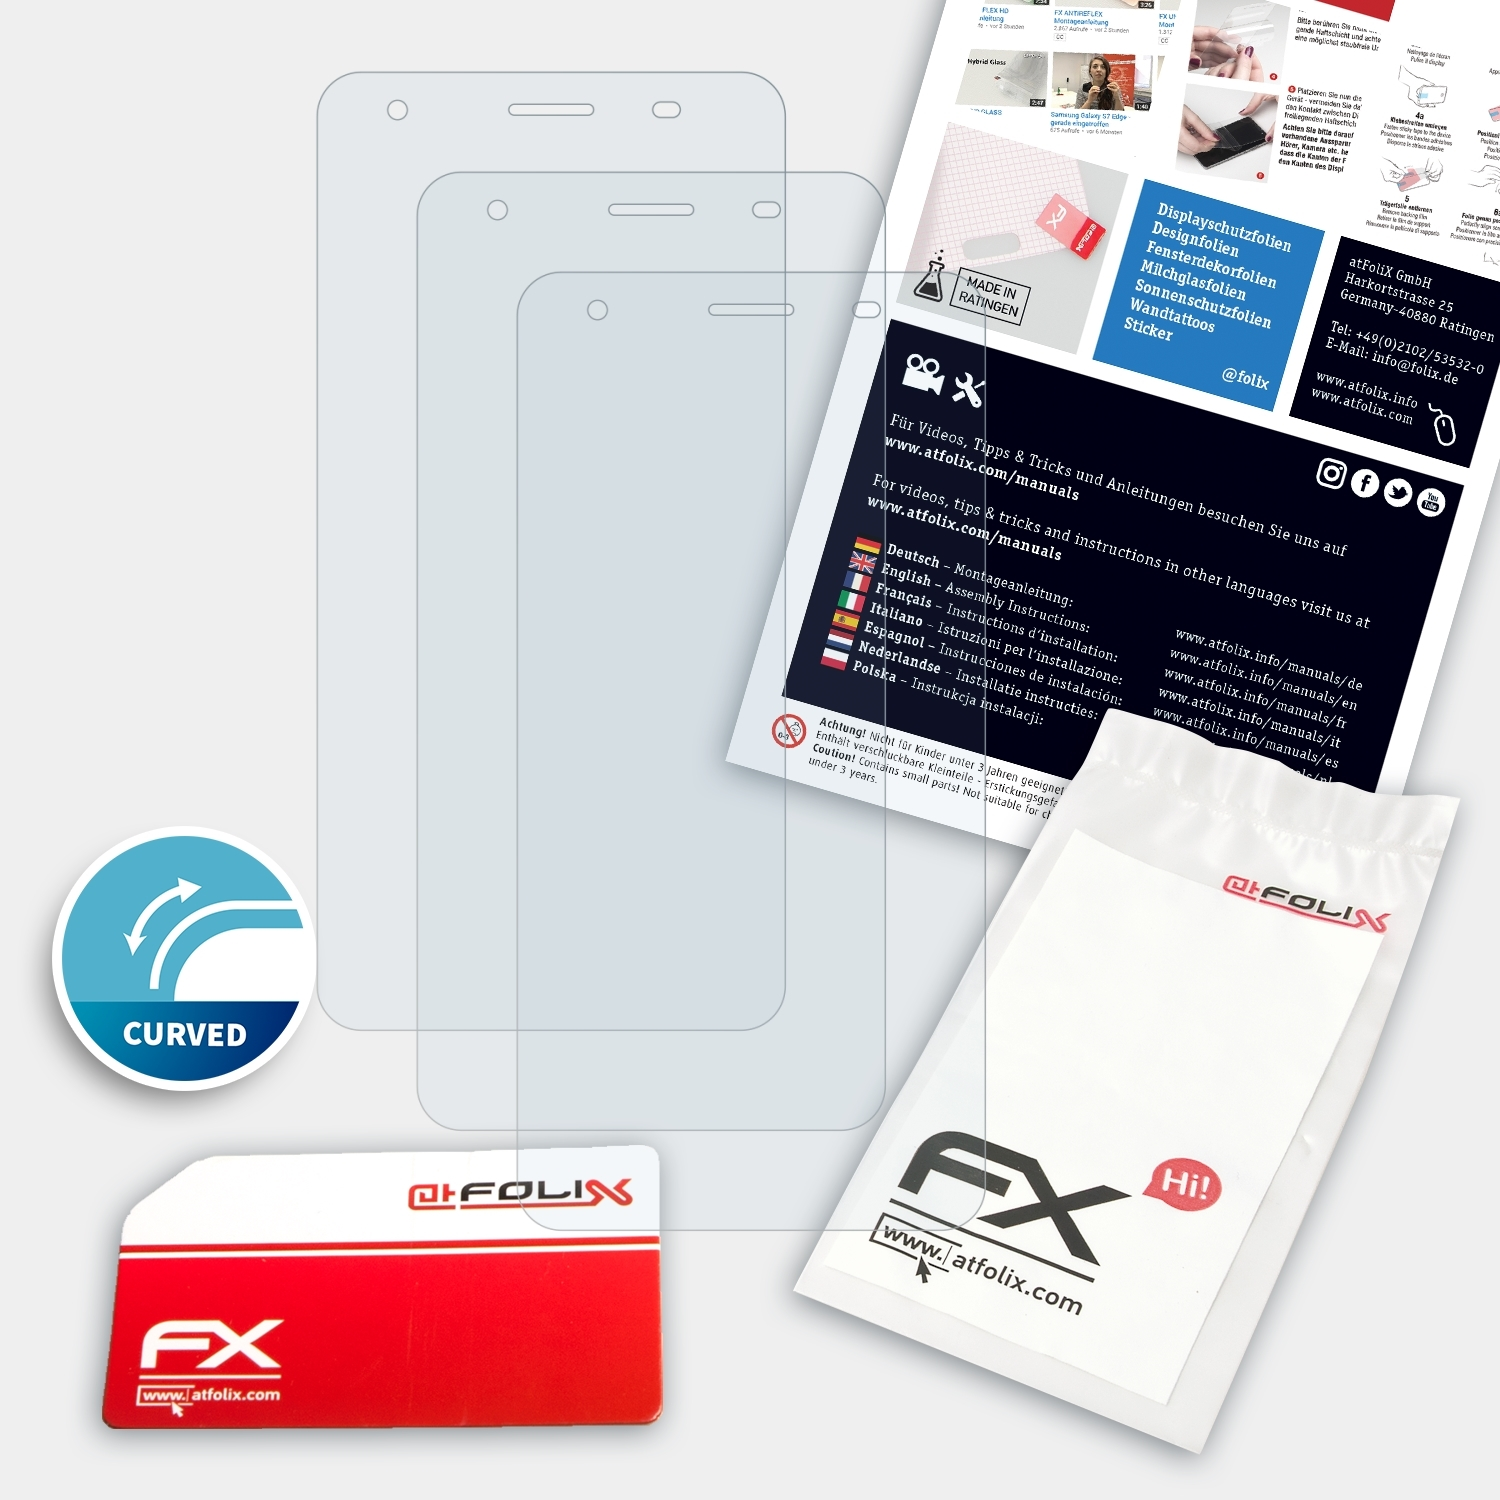 ATFOLIX 3x FX-ActiFleX Displayschutz(für Oukitel C5 Pro)